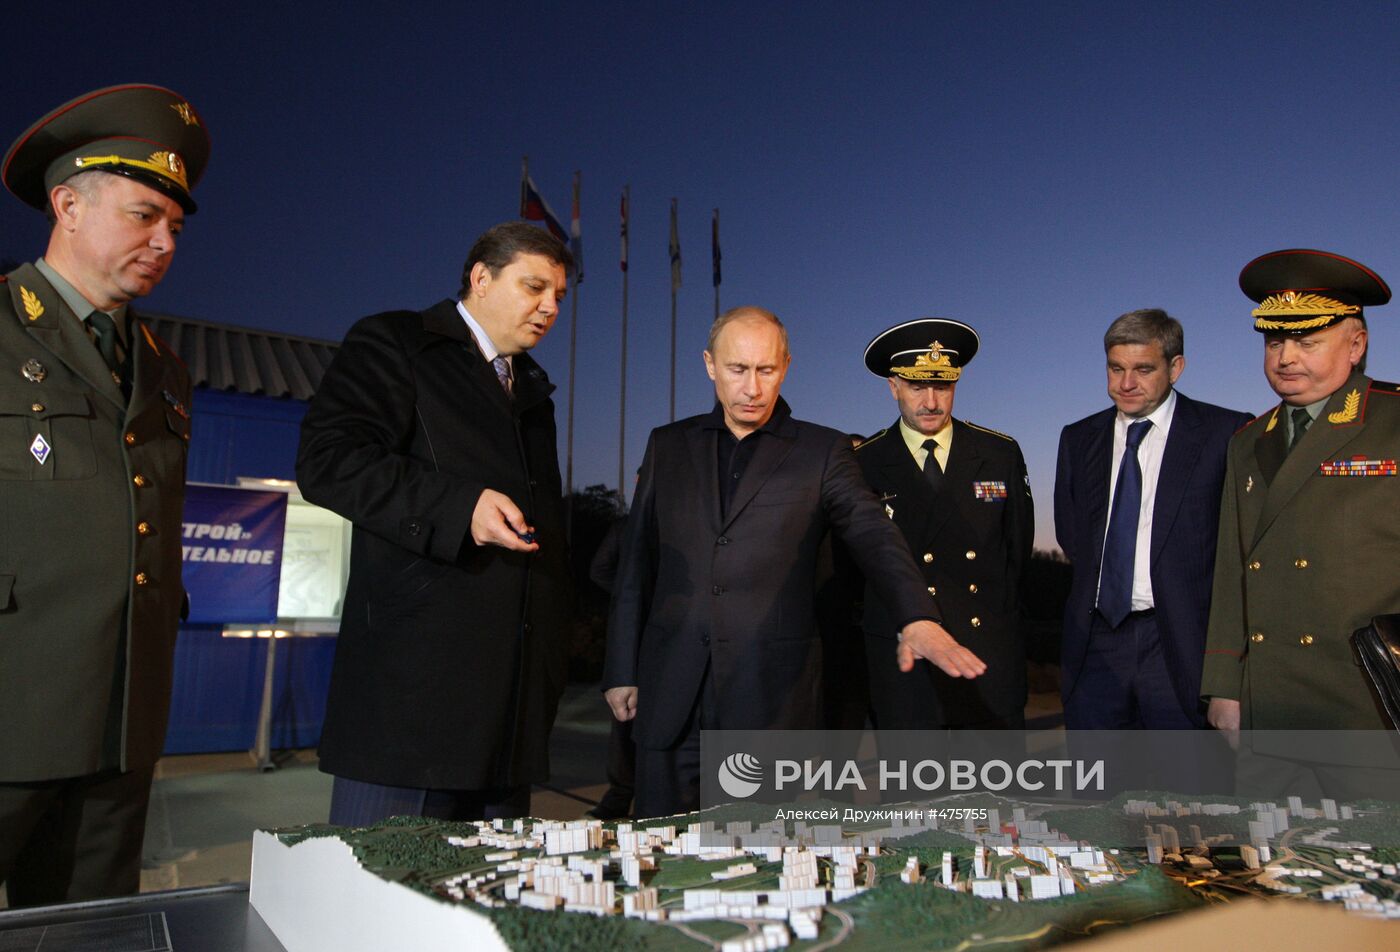 В.Путин посетил район "Снеговая падь" во Владивостоке